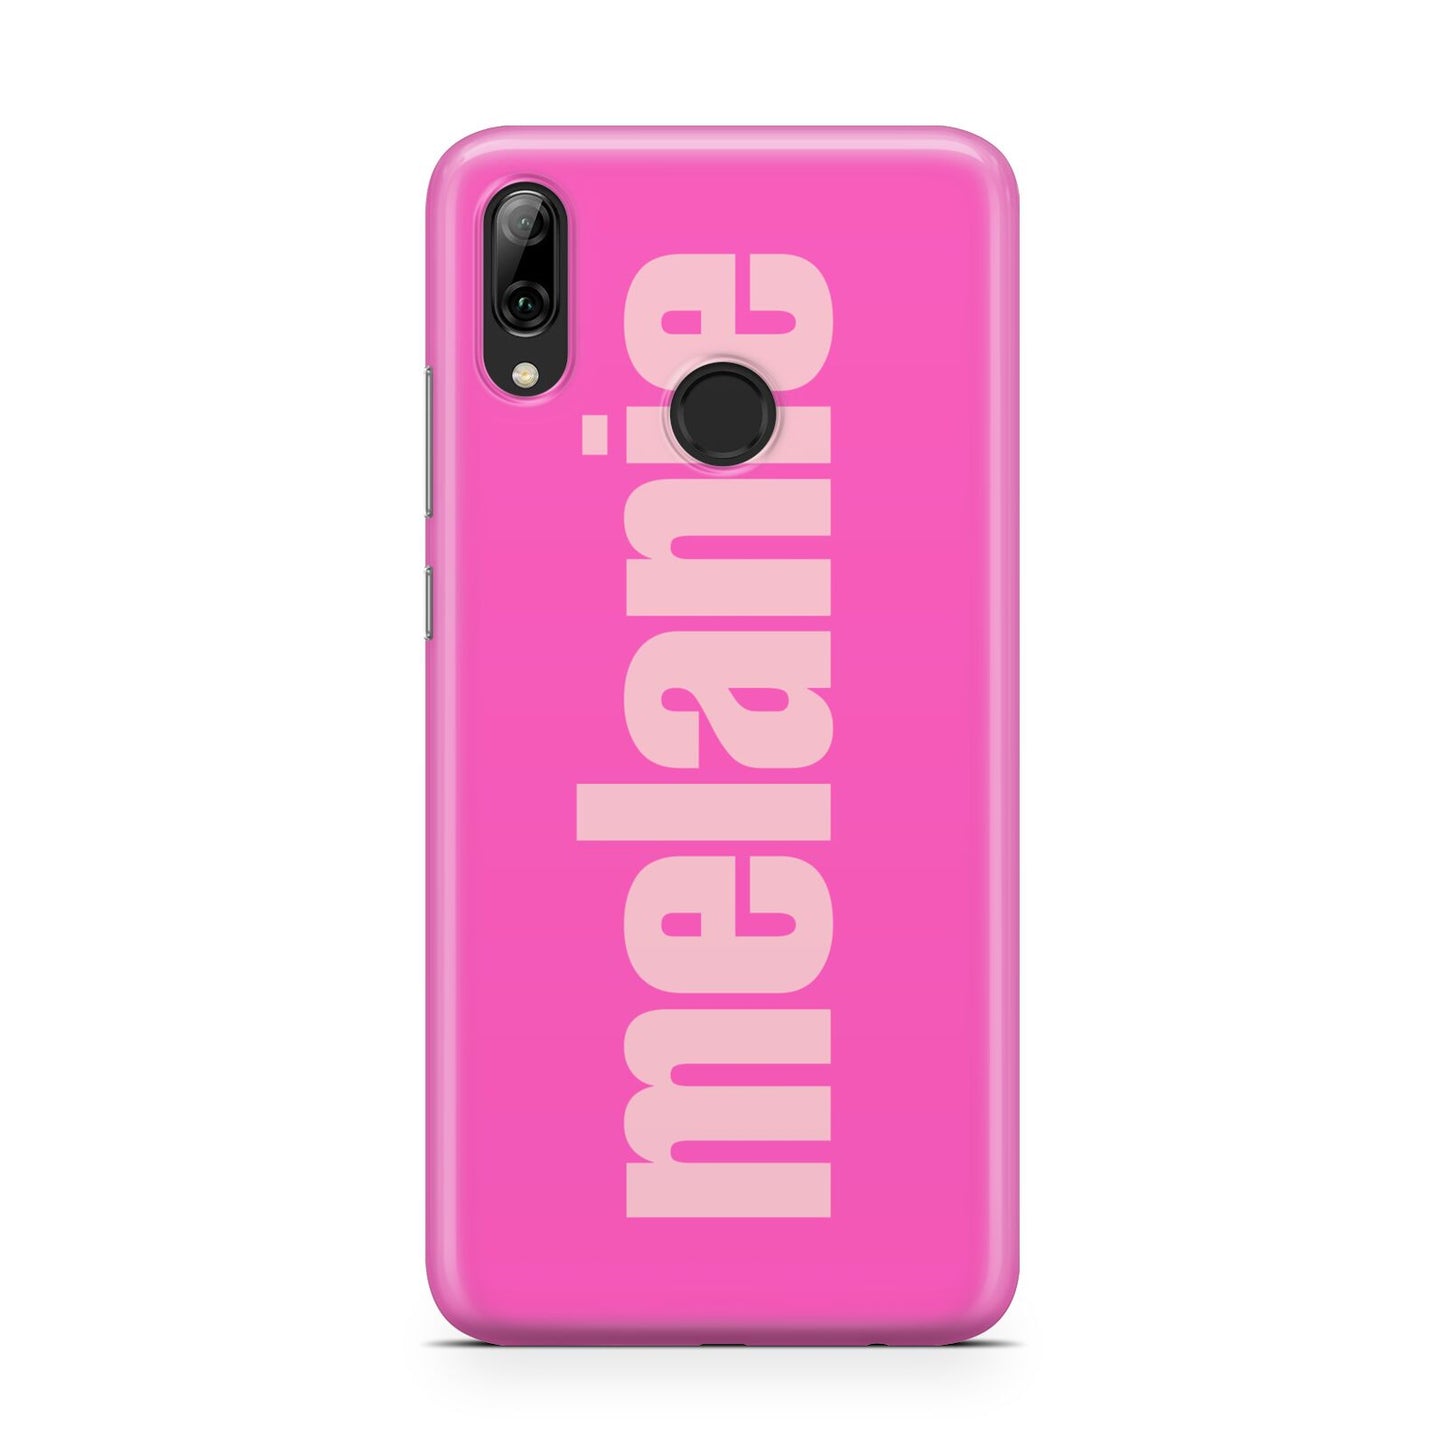 Personalised Pink Huawei Y7 2019